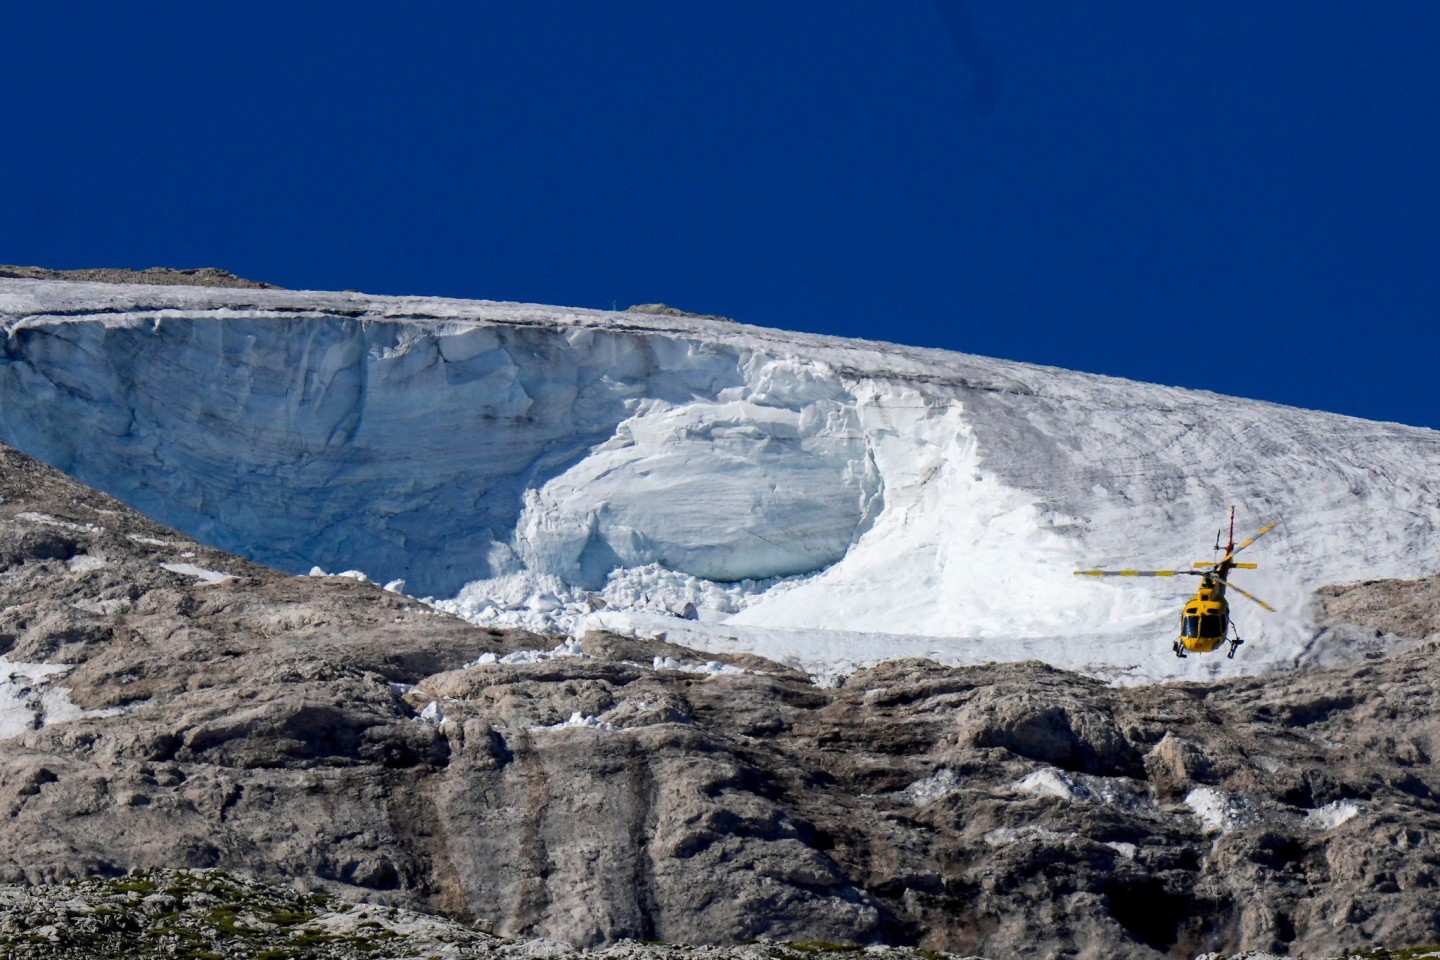 Der Punta-Rocca-Gletscher in den italienischen Alpen. Nach dem massiven Gletscherbruch und einer Lawine geht die Suche nach Opfern weiter.